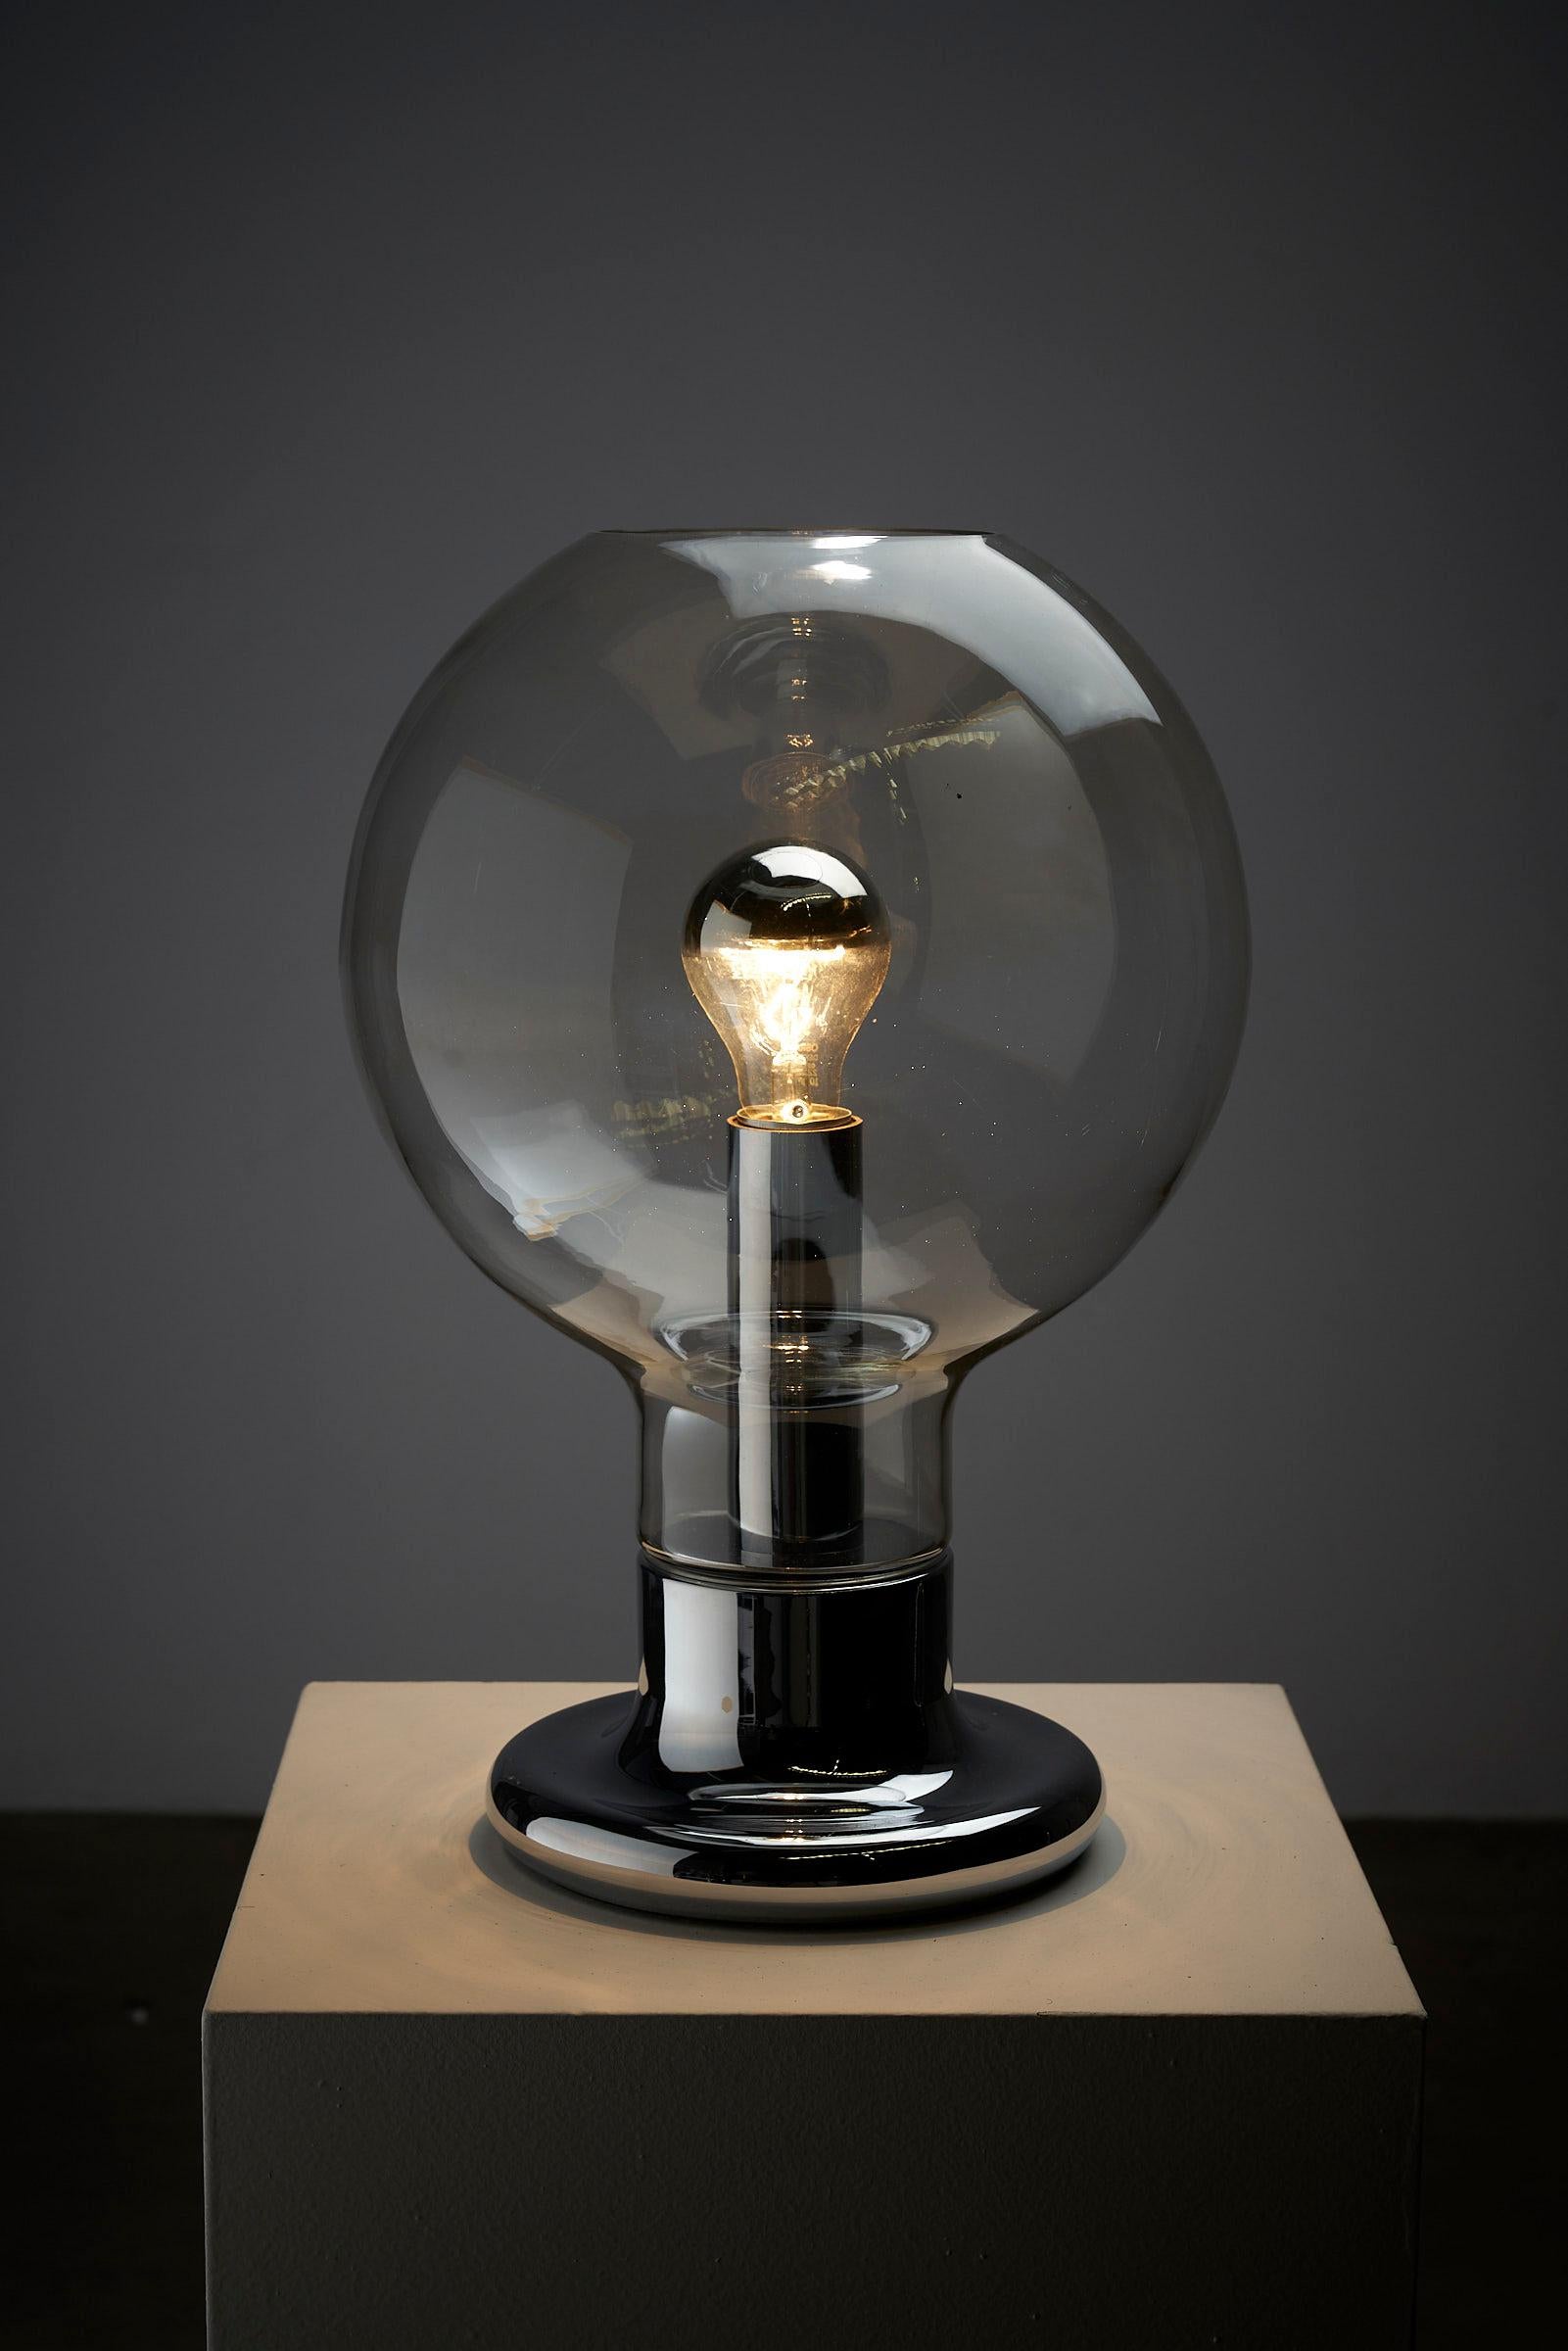 Voici la lampe de table Glass Dome de Cosack Leuchten. Cette lampe à poser dégage un attrait futuriste avec son design épuré et minimaliste, parfait pour ceux qui recherchent une touche d'esthétique de l'ère spatiale.

La lampe se compose d'une base